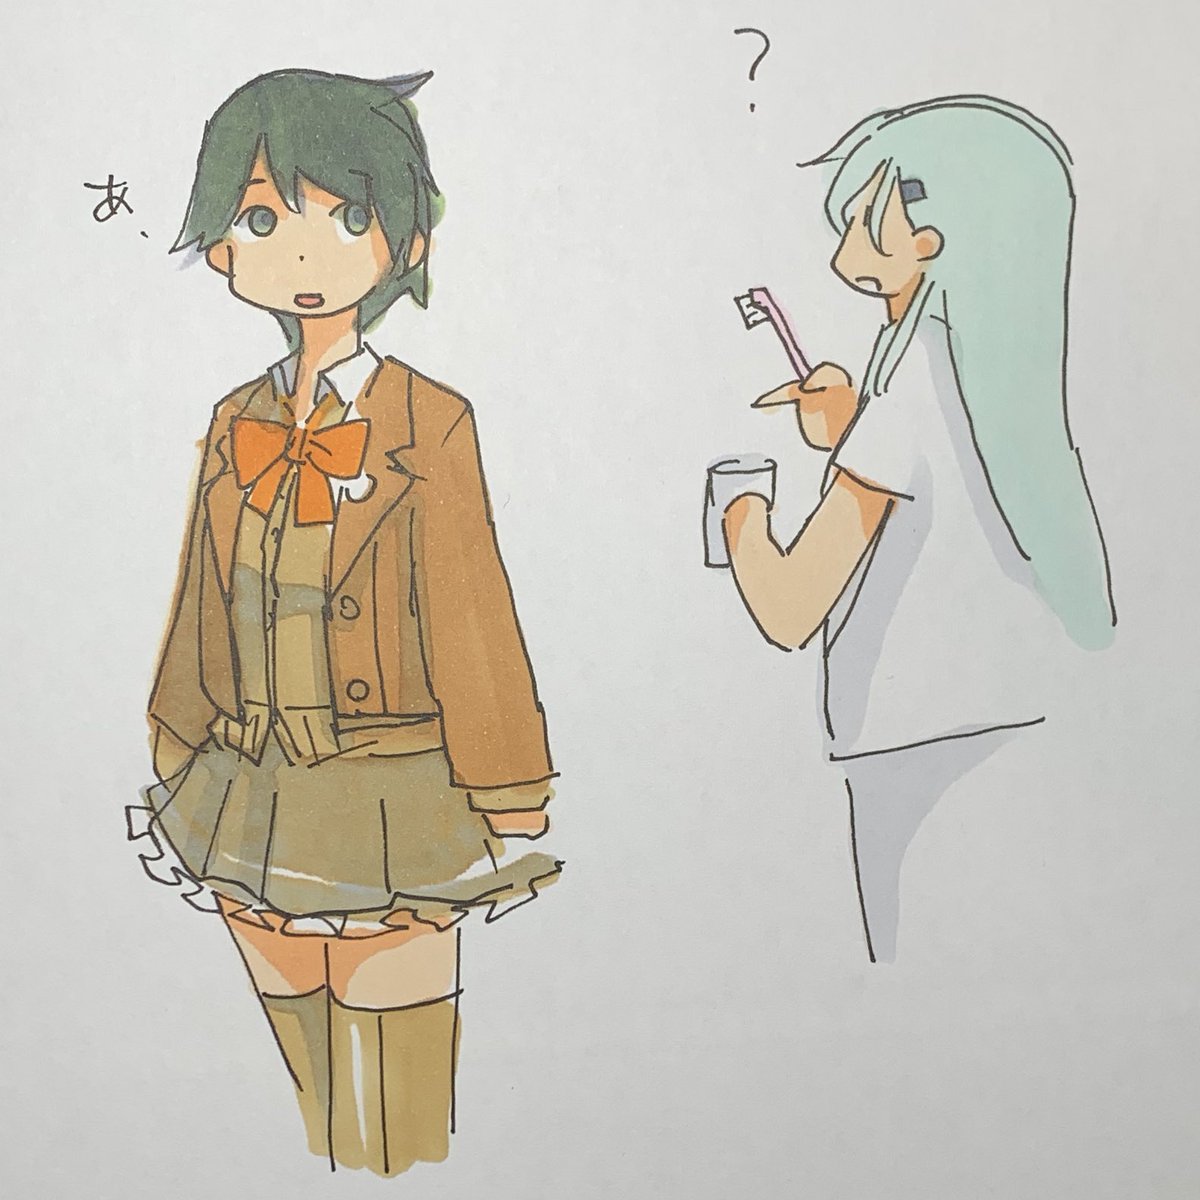 mogami (kancolle) ,suzuya (kancolle) multiple girls 2girls long hair toothbrush skirt jacket short hair  illustration images